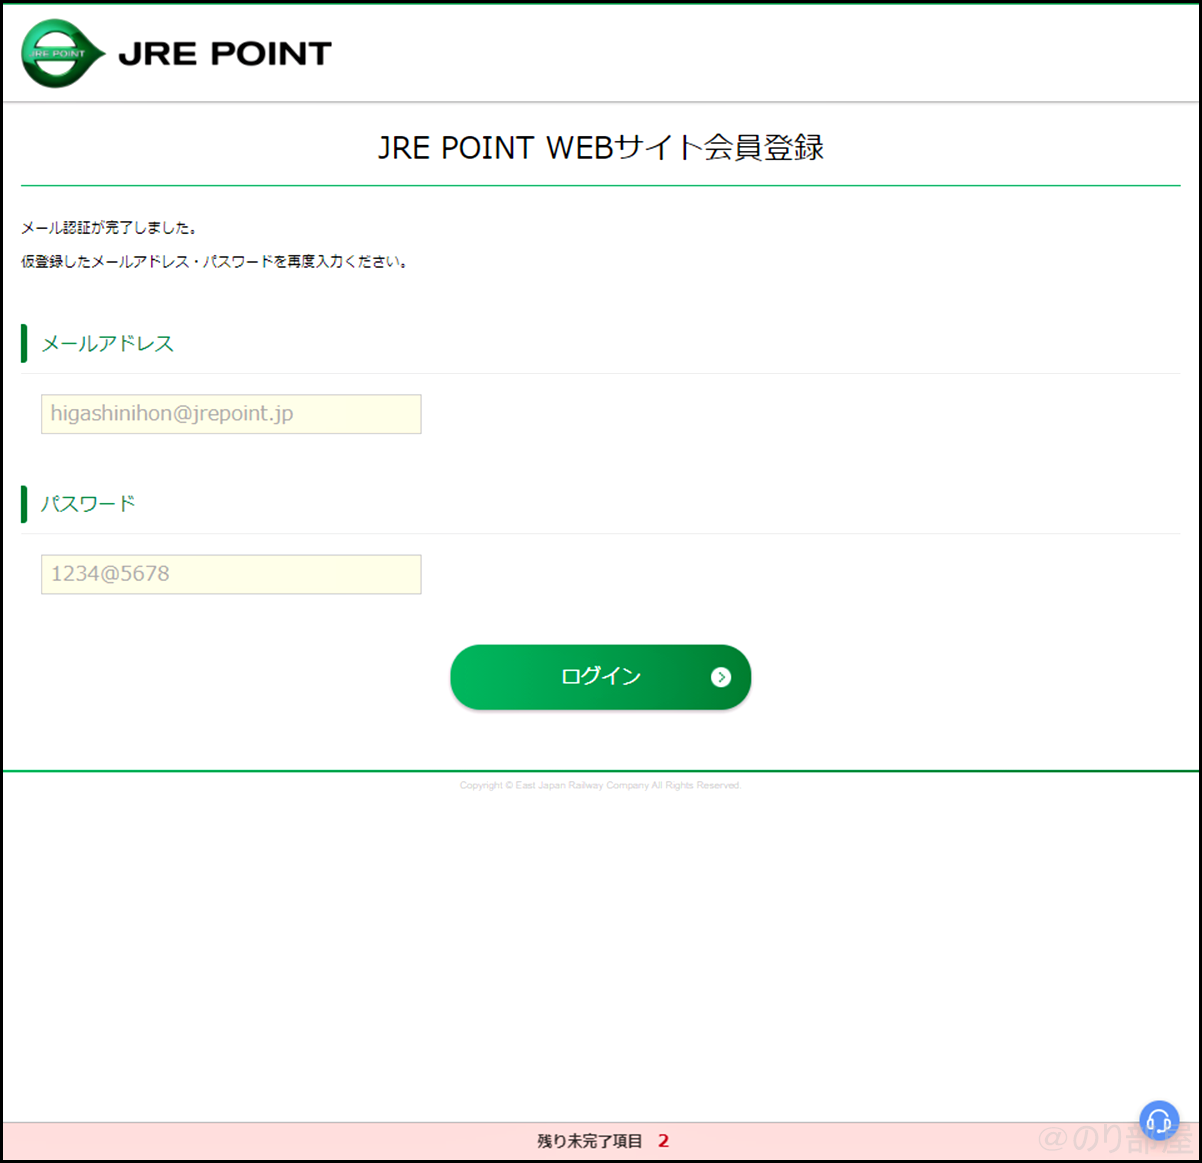 「JRE POINT WEBサイト会員登録」でJRE POINTに登録をします【徹底解説】JREポイントの登録方法｡スマホアプリでカードいらずでポイントを貯めることができます！ポイントはSuicaにチャージ！。 